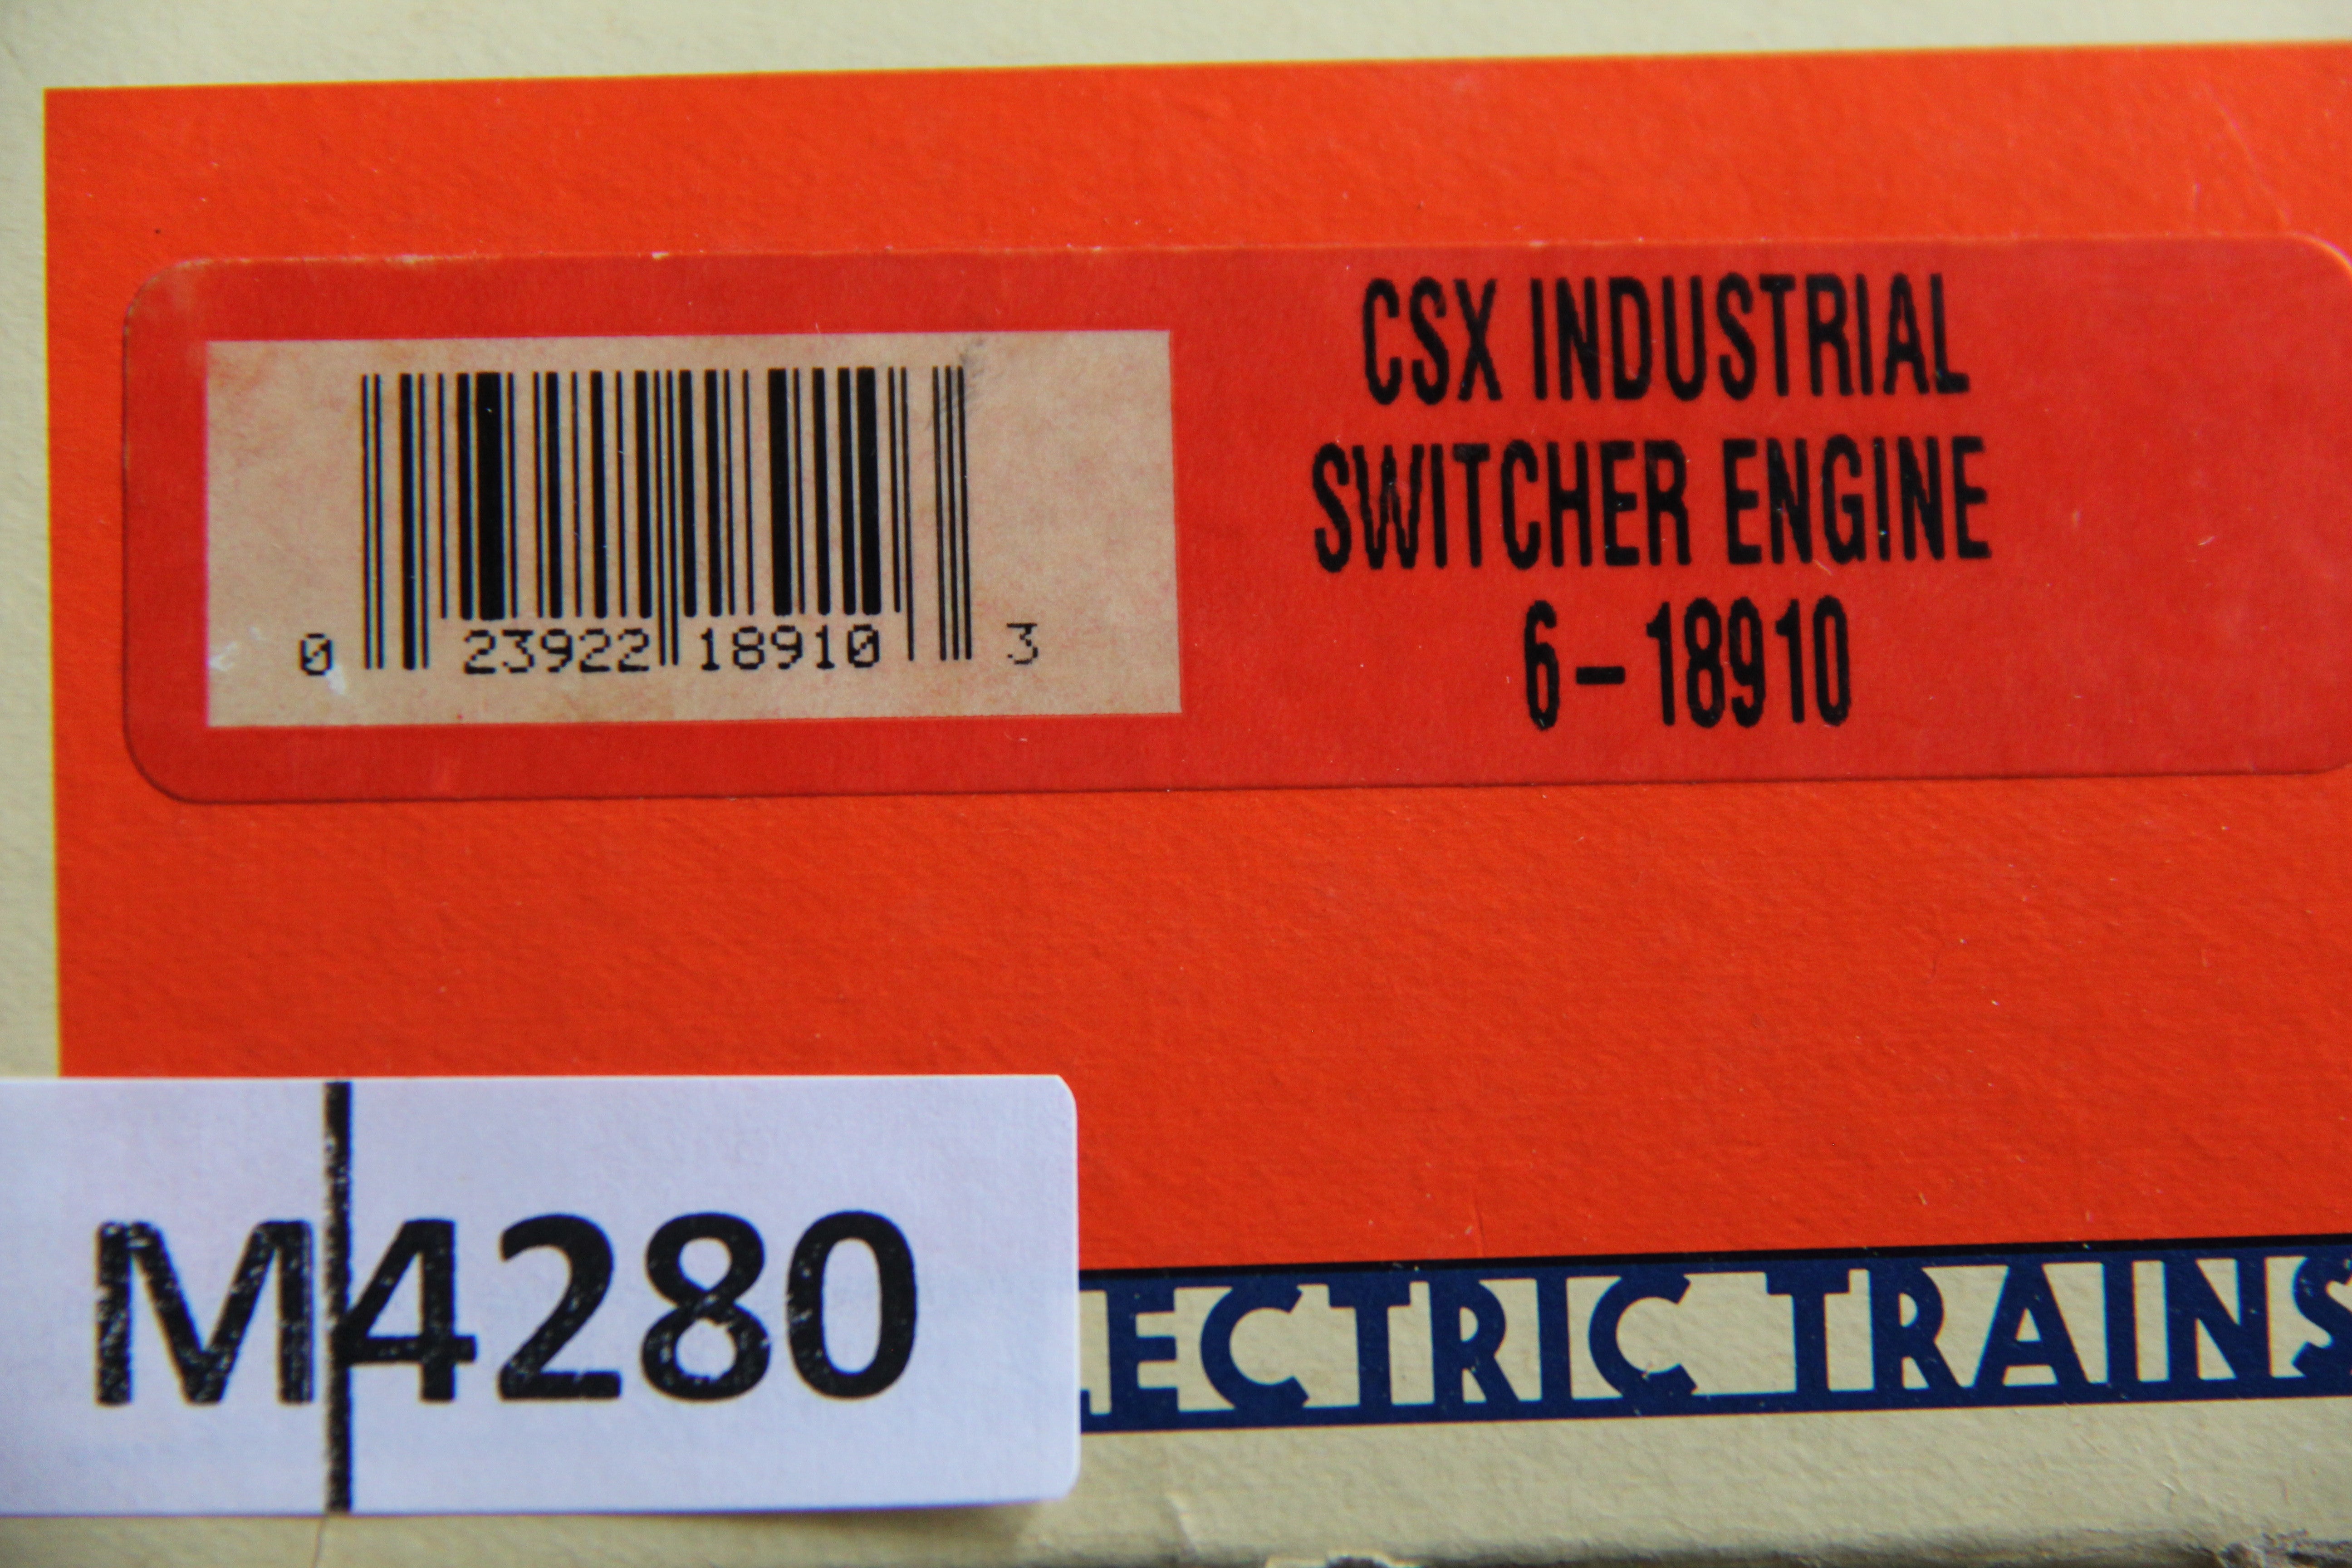 Lionel 6-18910 CSX Industrial Switcher Engine-Second hand-M4280